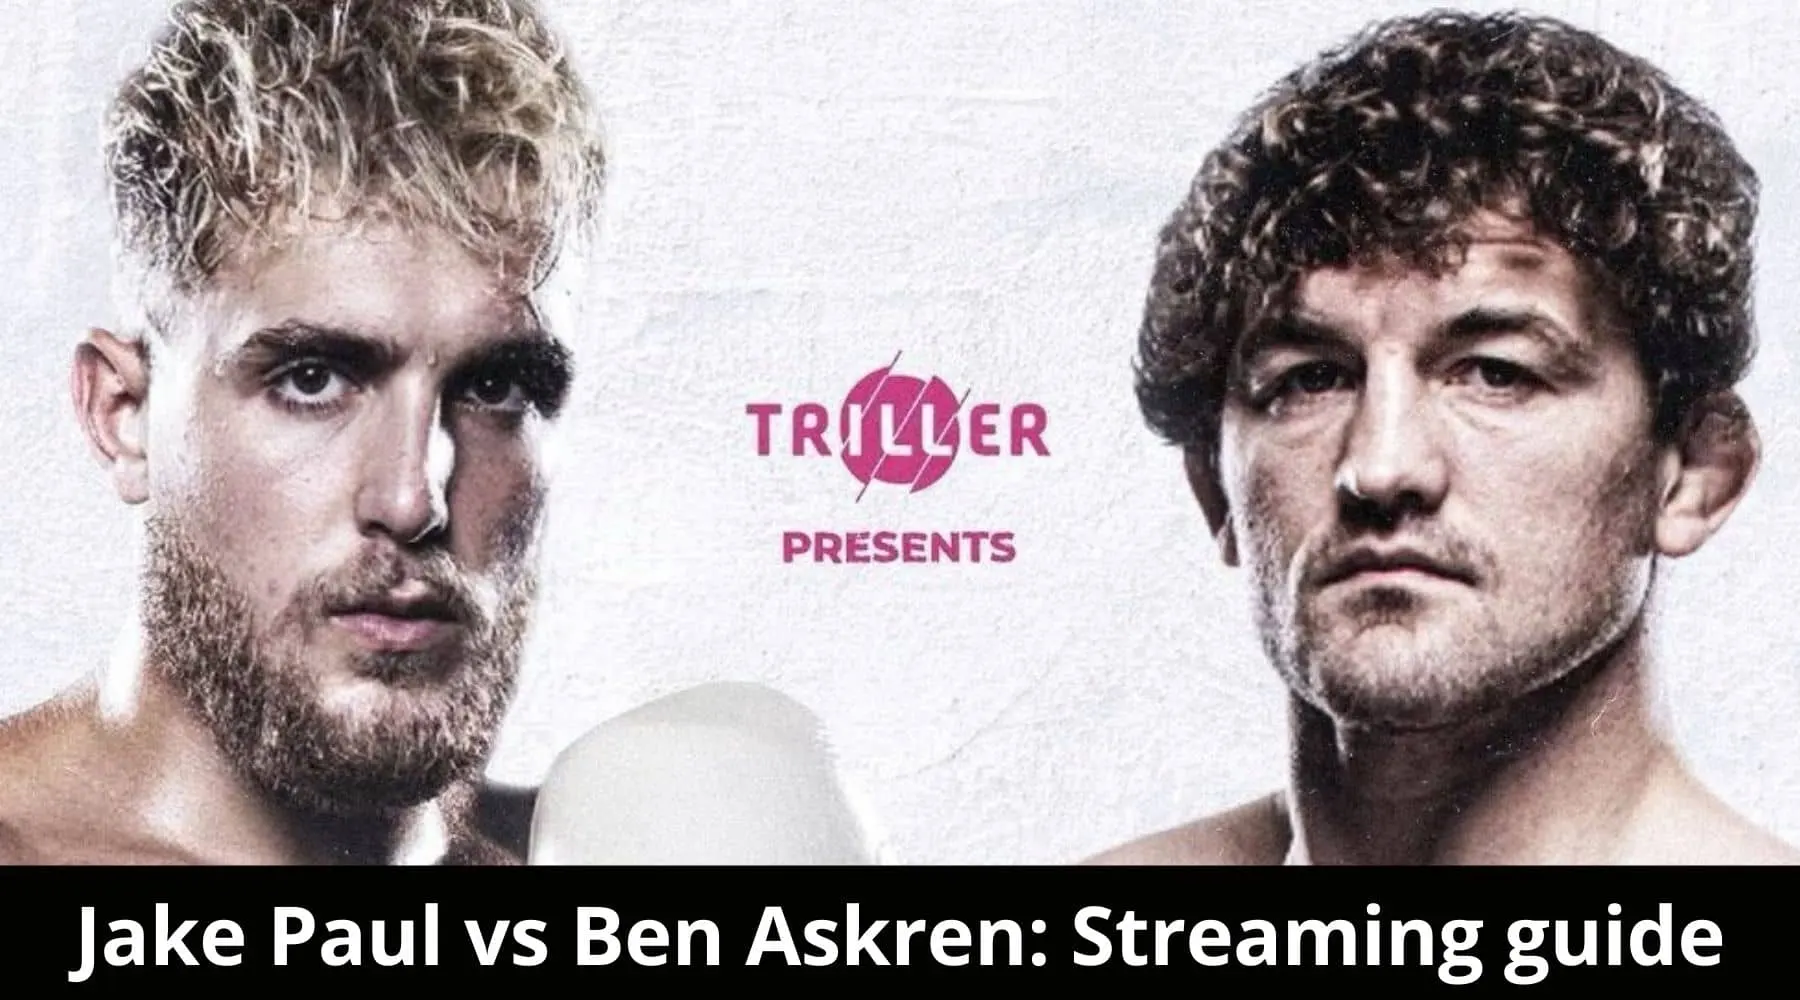 How to watch Jake Paul vs Ben Askren boxing live online in Australia